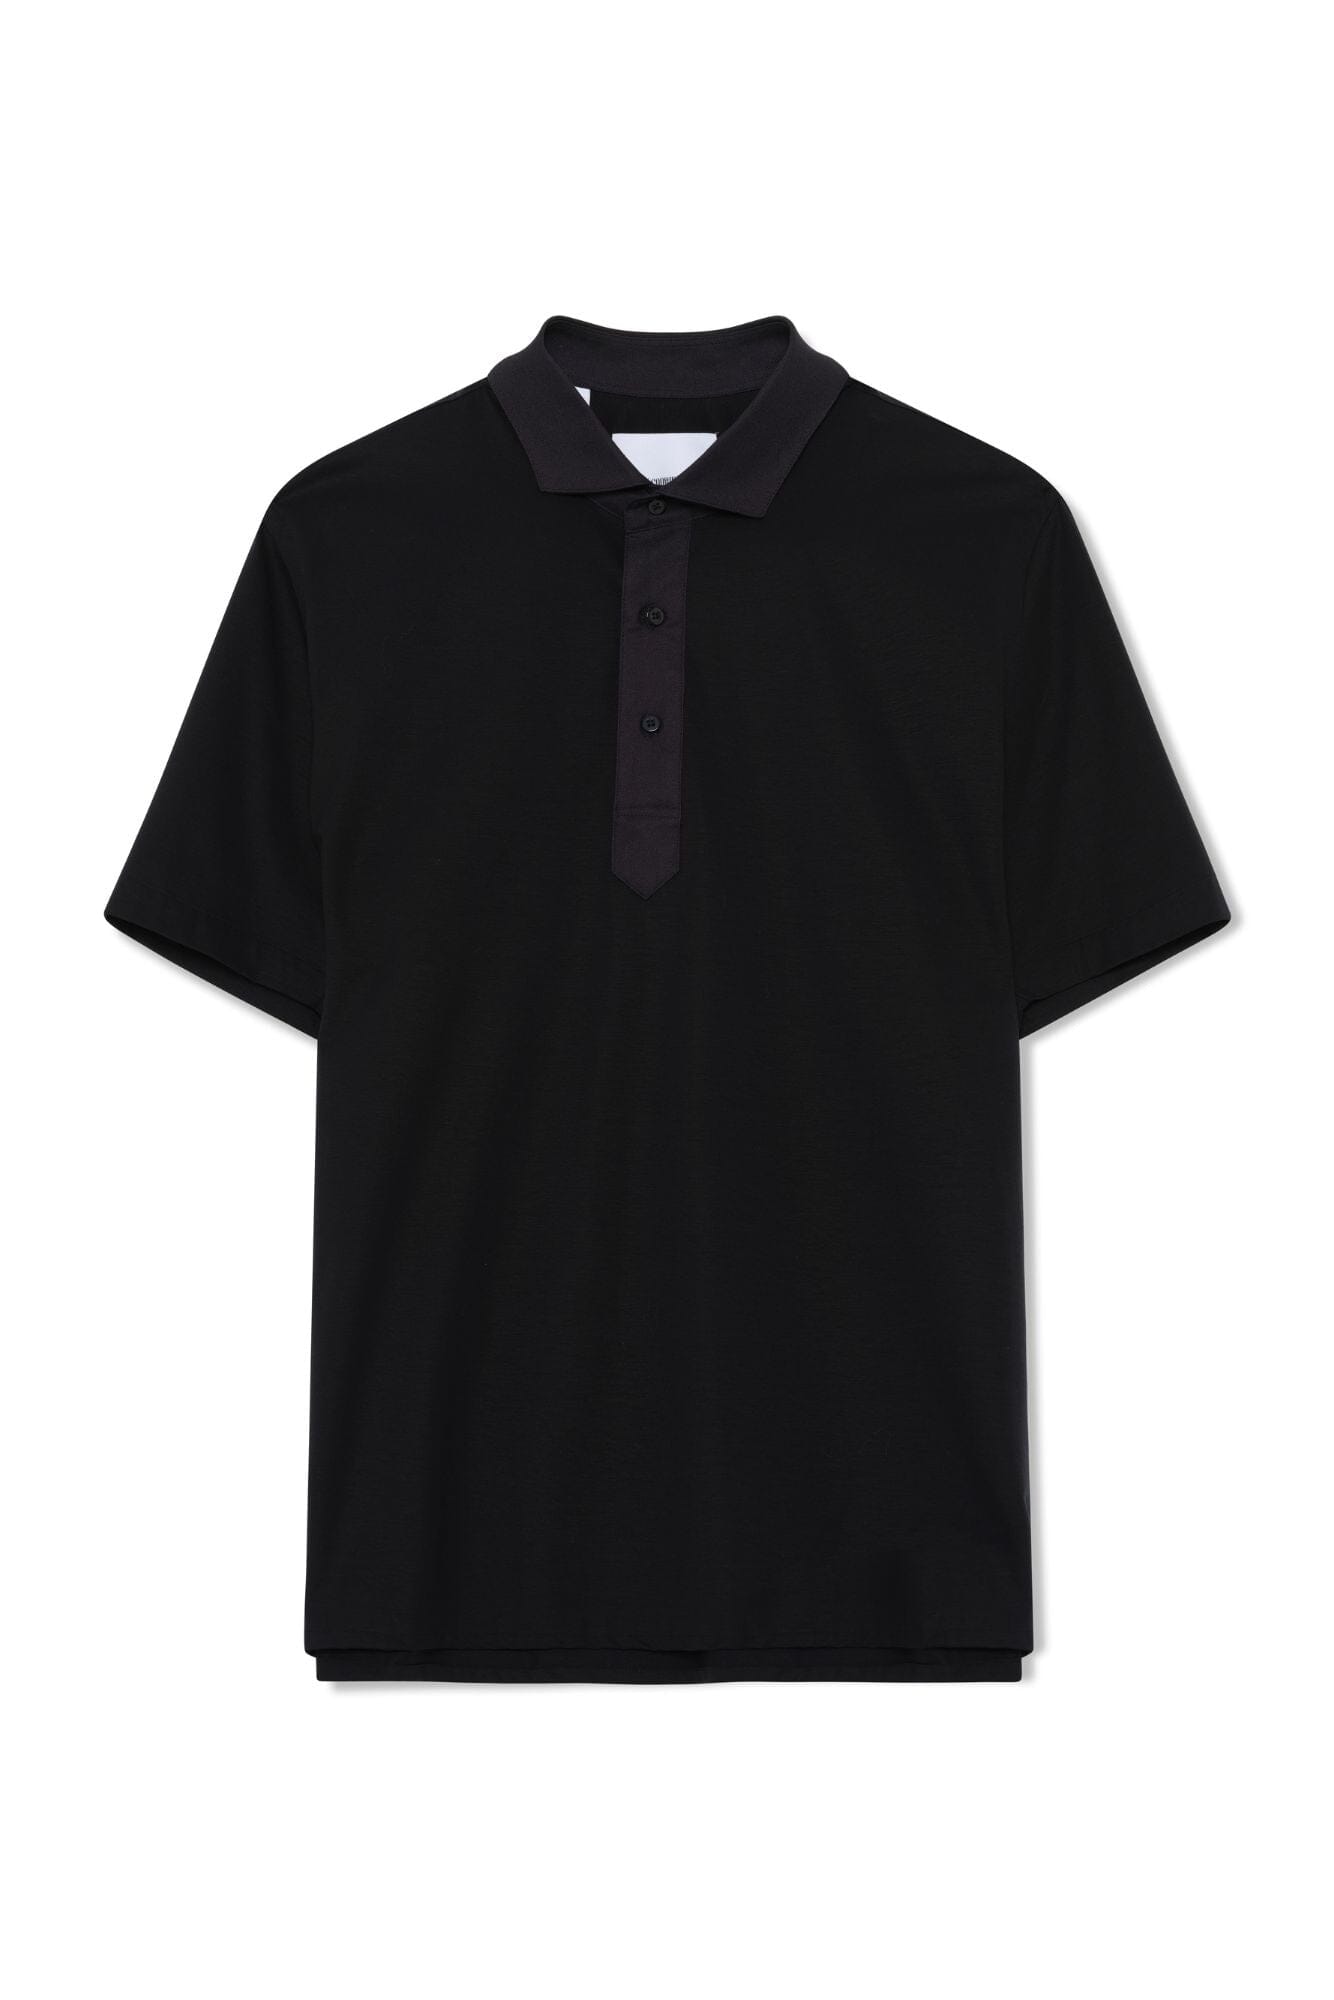 CGC Polo Shirt - Black 4 Way Stretch with Black Poplin